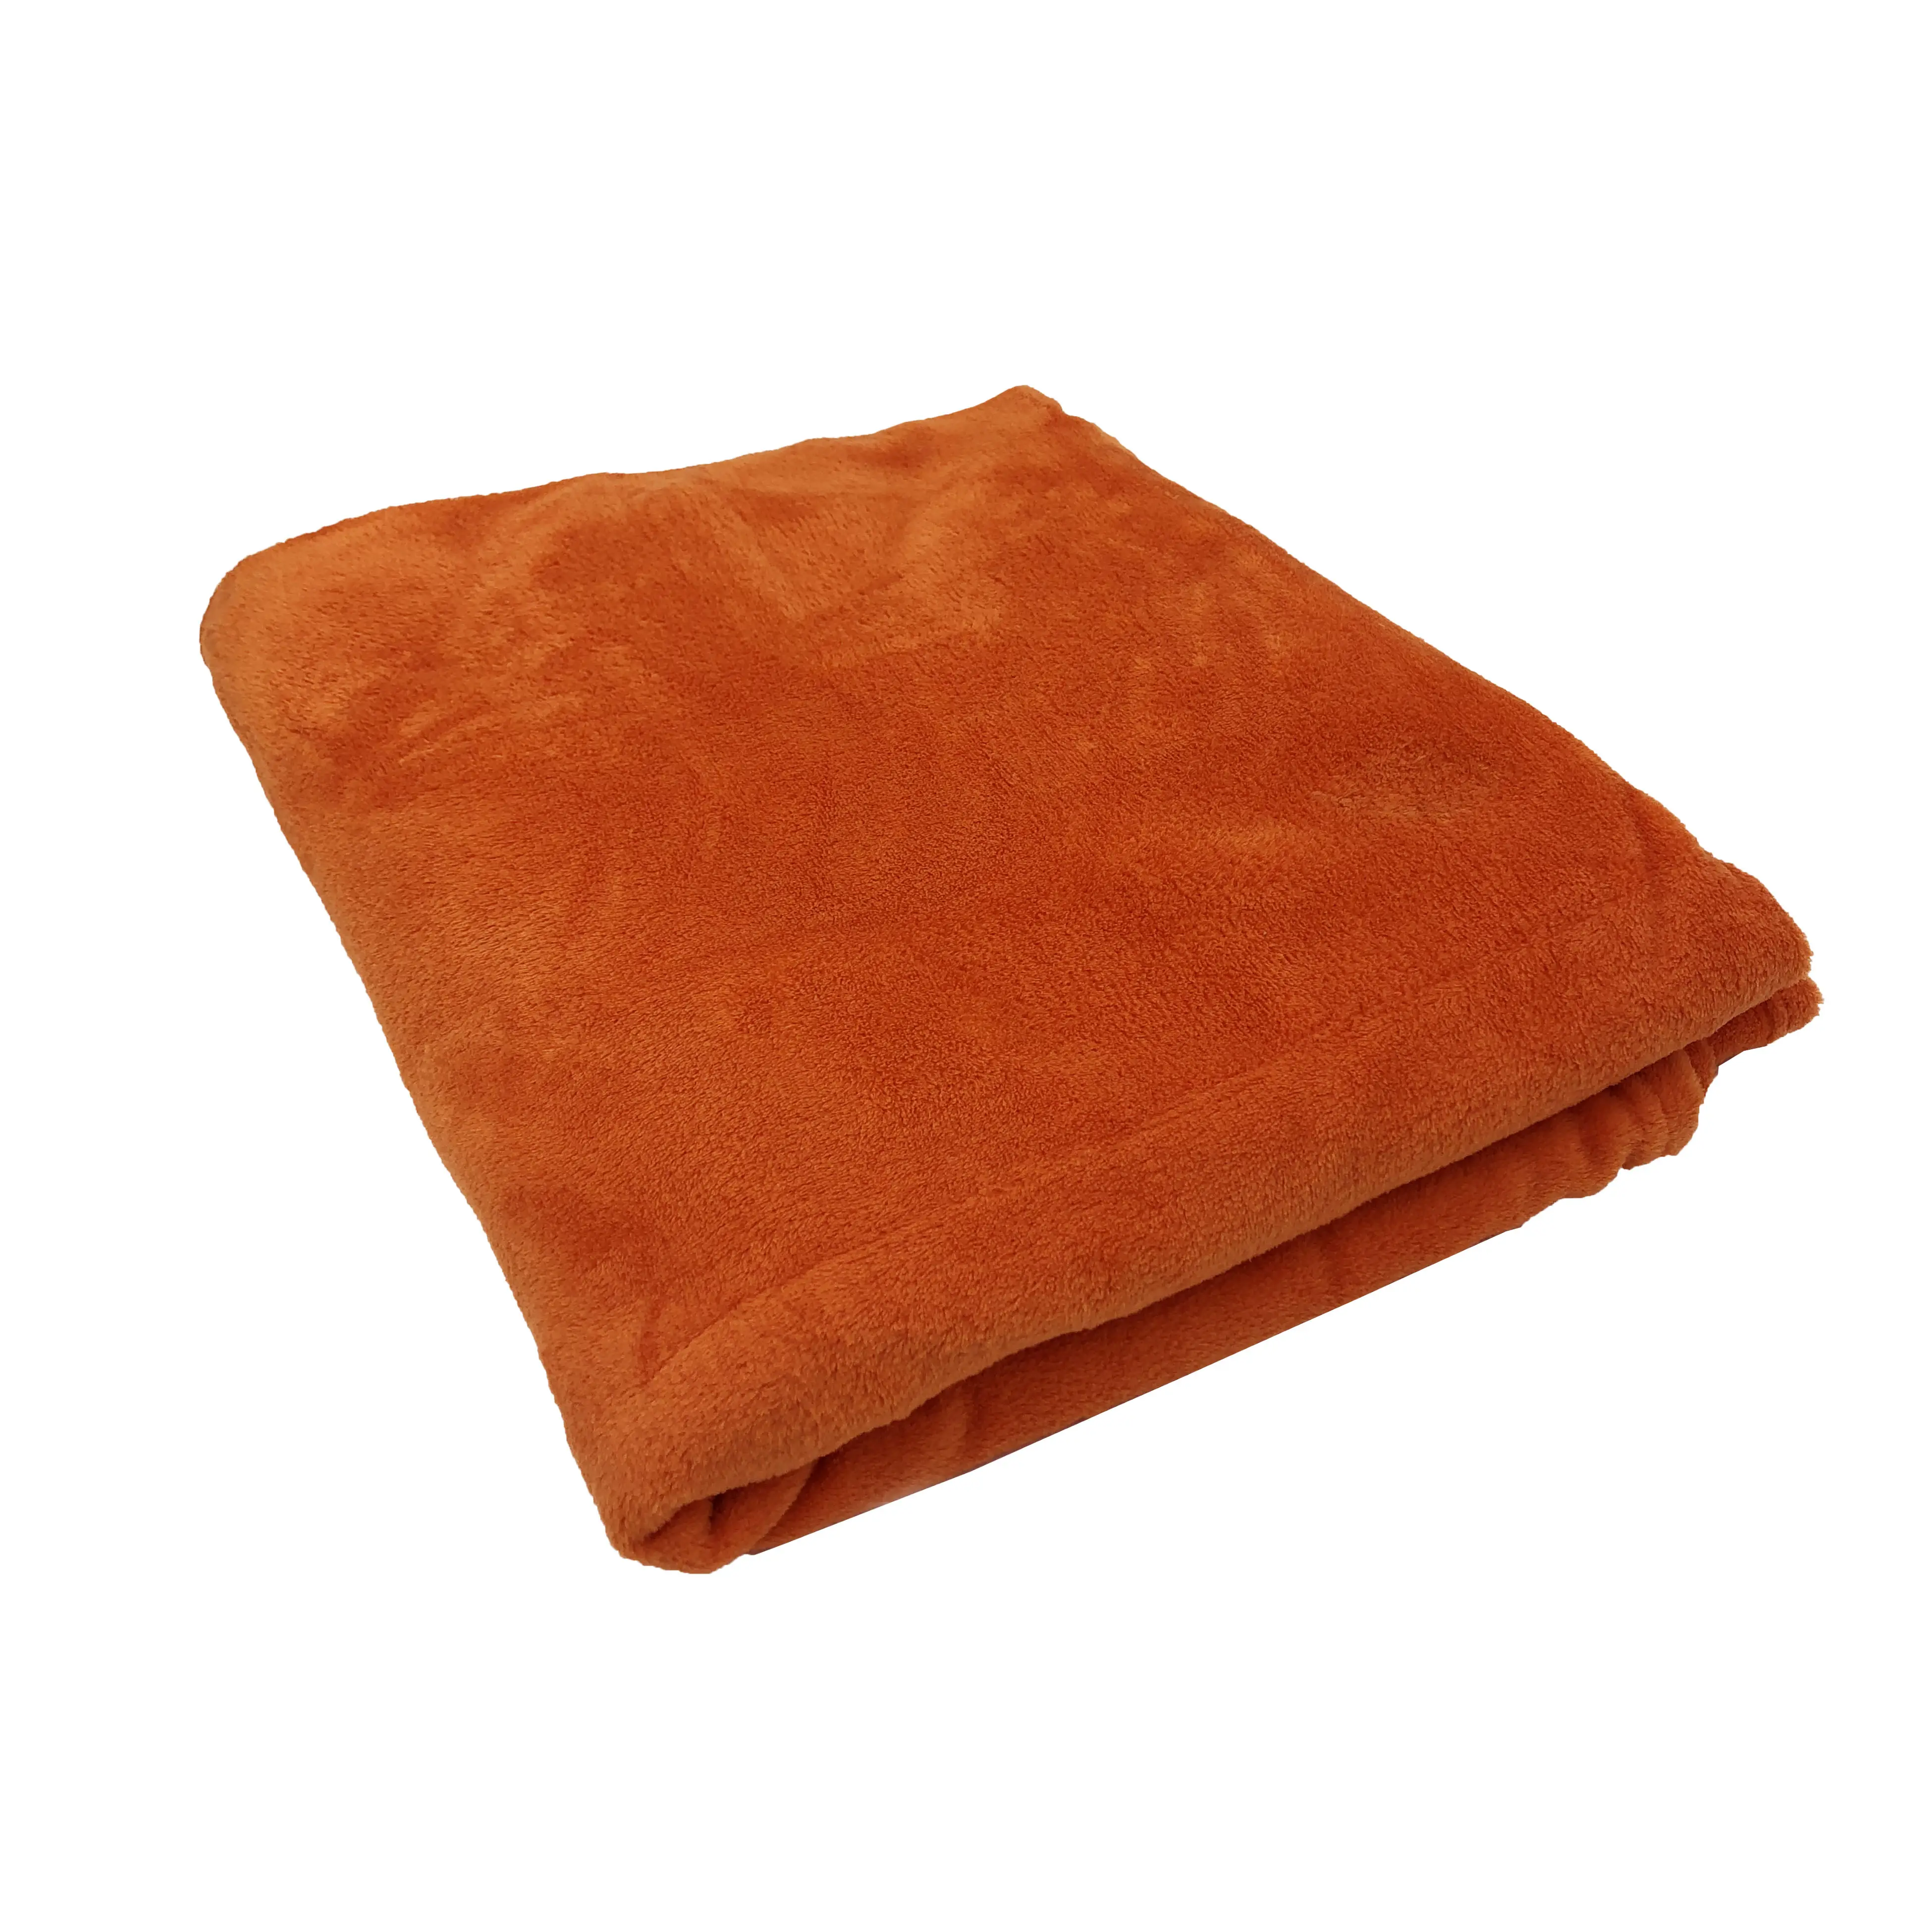 160*210 सेमी आकार 100% पॉलिएस्टर कंबल थोक सस्ते ठोस रंग कोरल मखमल कंबल पूरे मौसम में फेंक दिया जा सकता है।